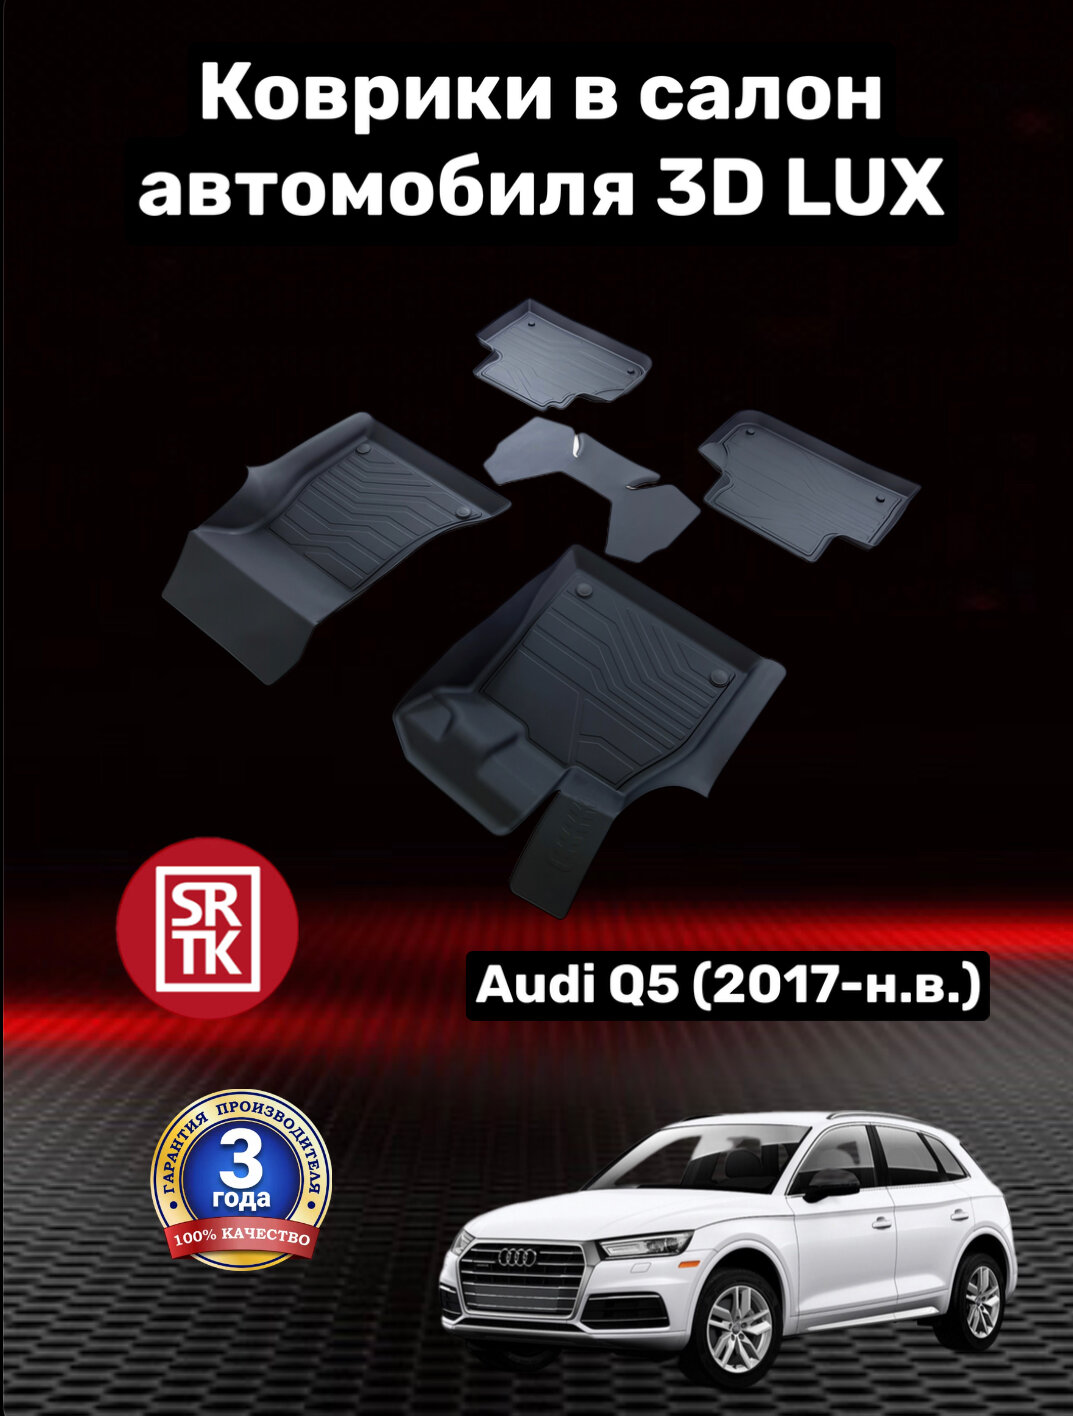 Ковры резиновые 3D LUX Ауди КУ5 2 (2017-)/Audi Q5 (FY) II SRTK (Саранск) комплект в салон